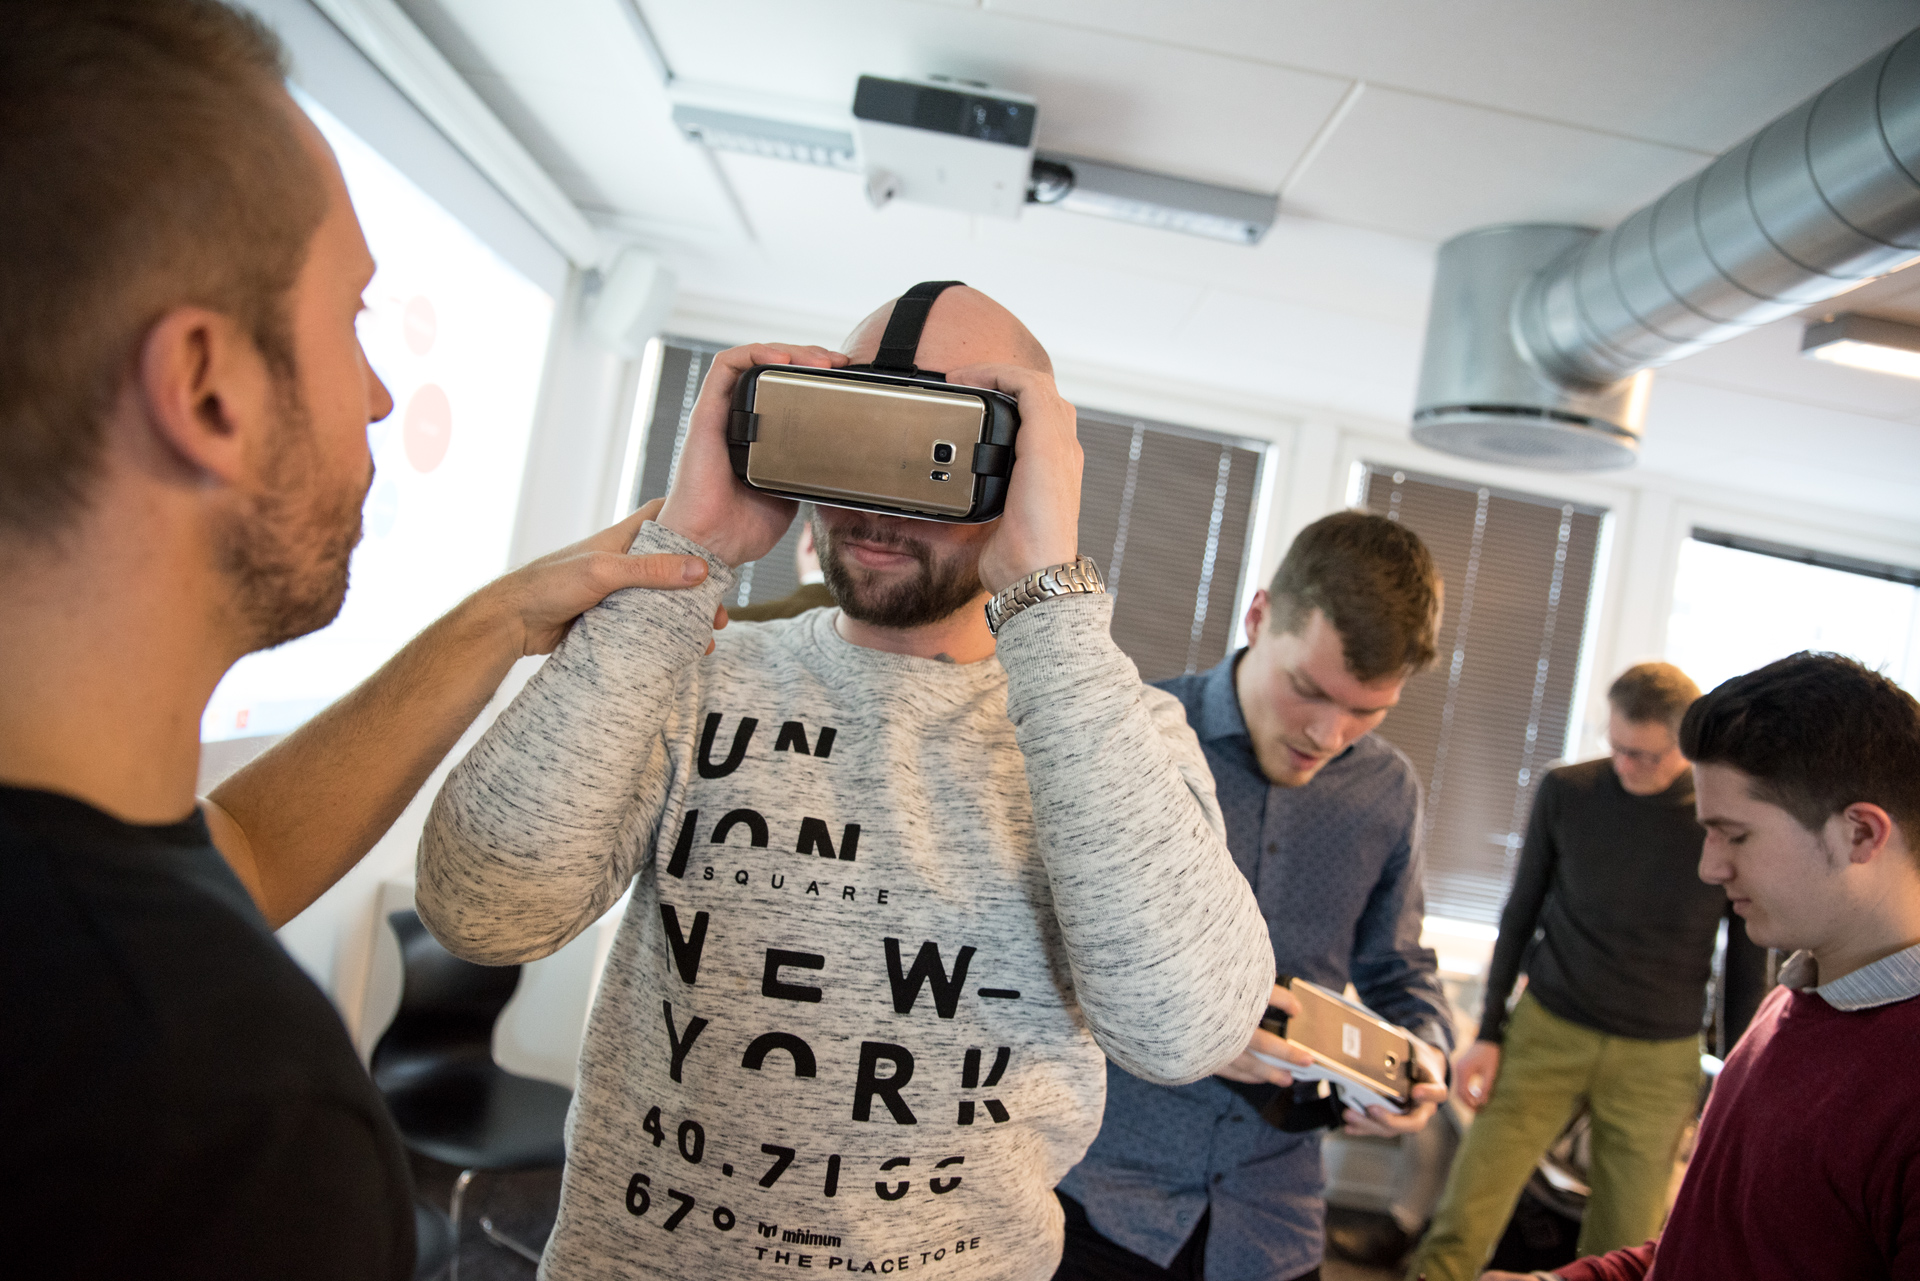 Studerende fra Cphbusiness har virtual reality briller på